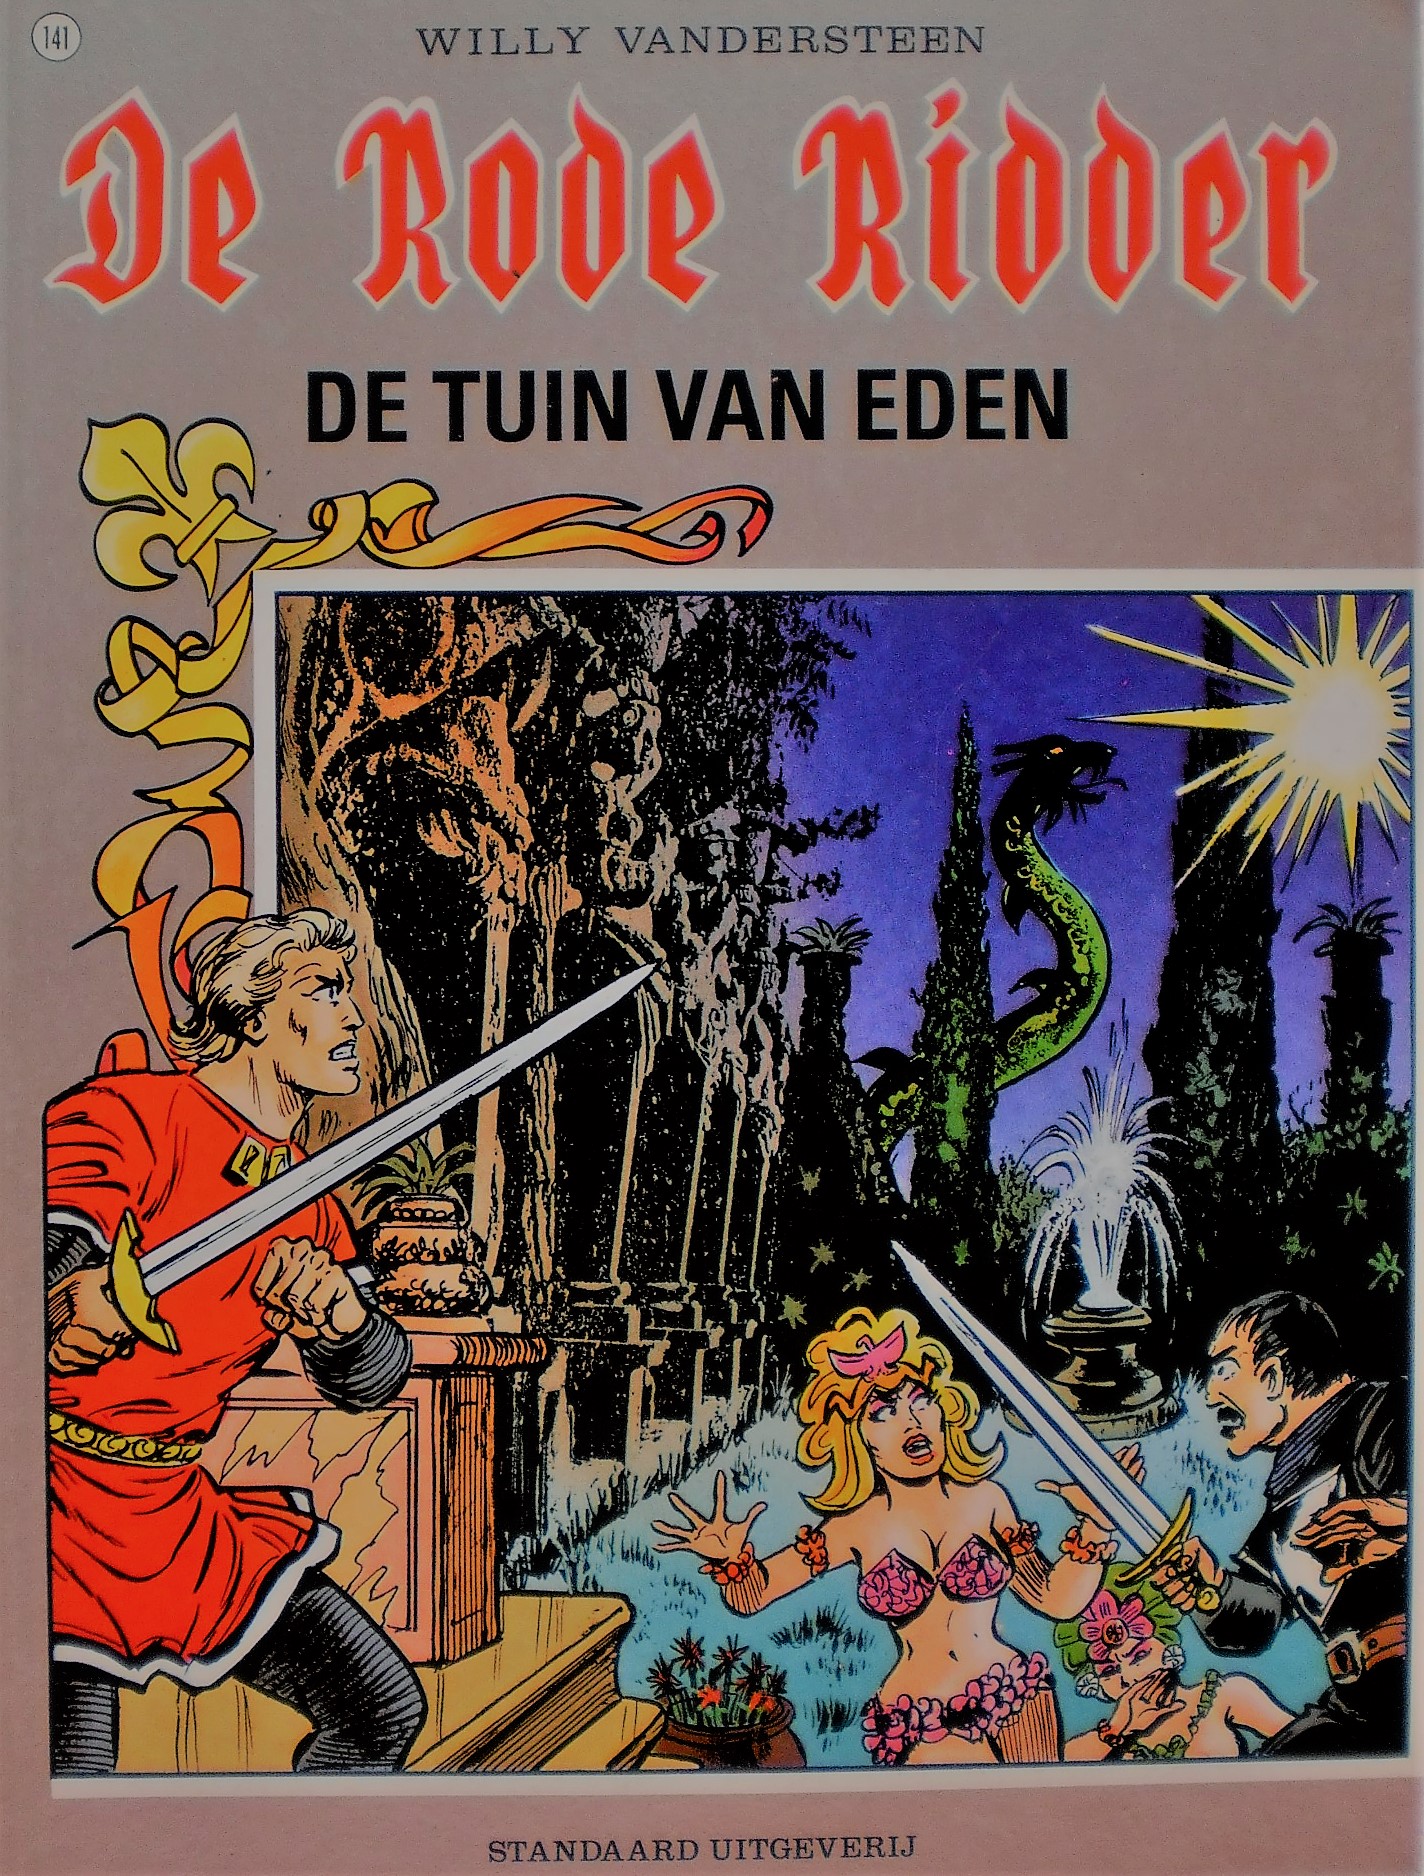 Vaarwel Storing koper De Tuin van Eden | De Rode Ridder Wiki | Fandom